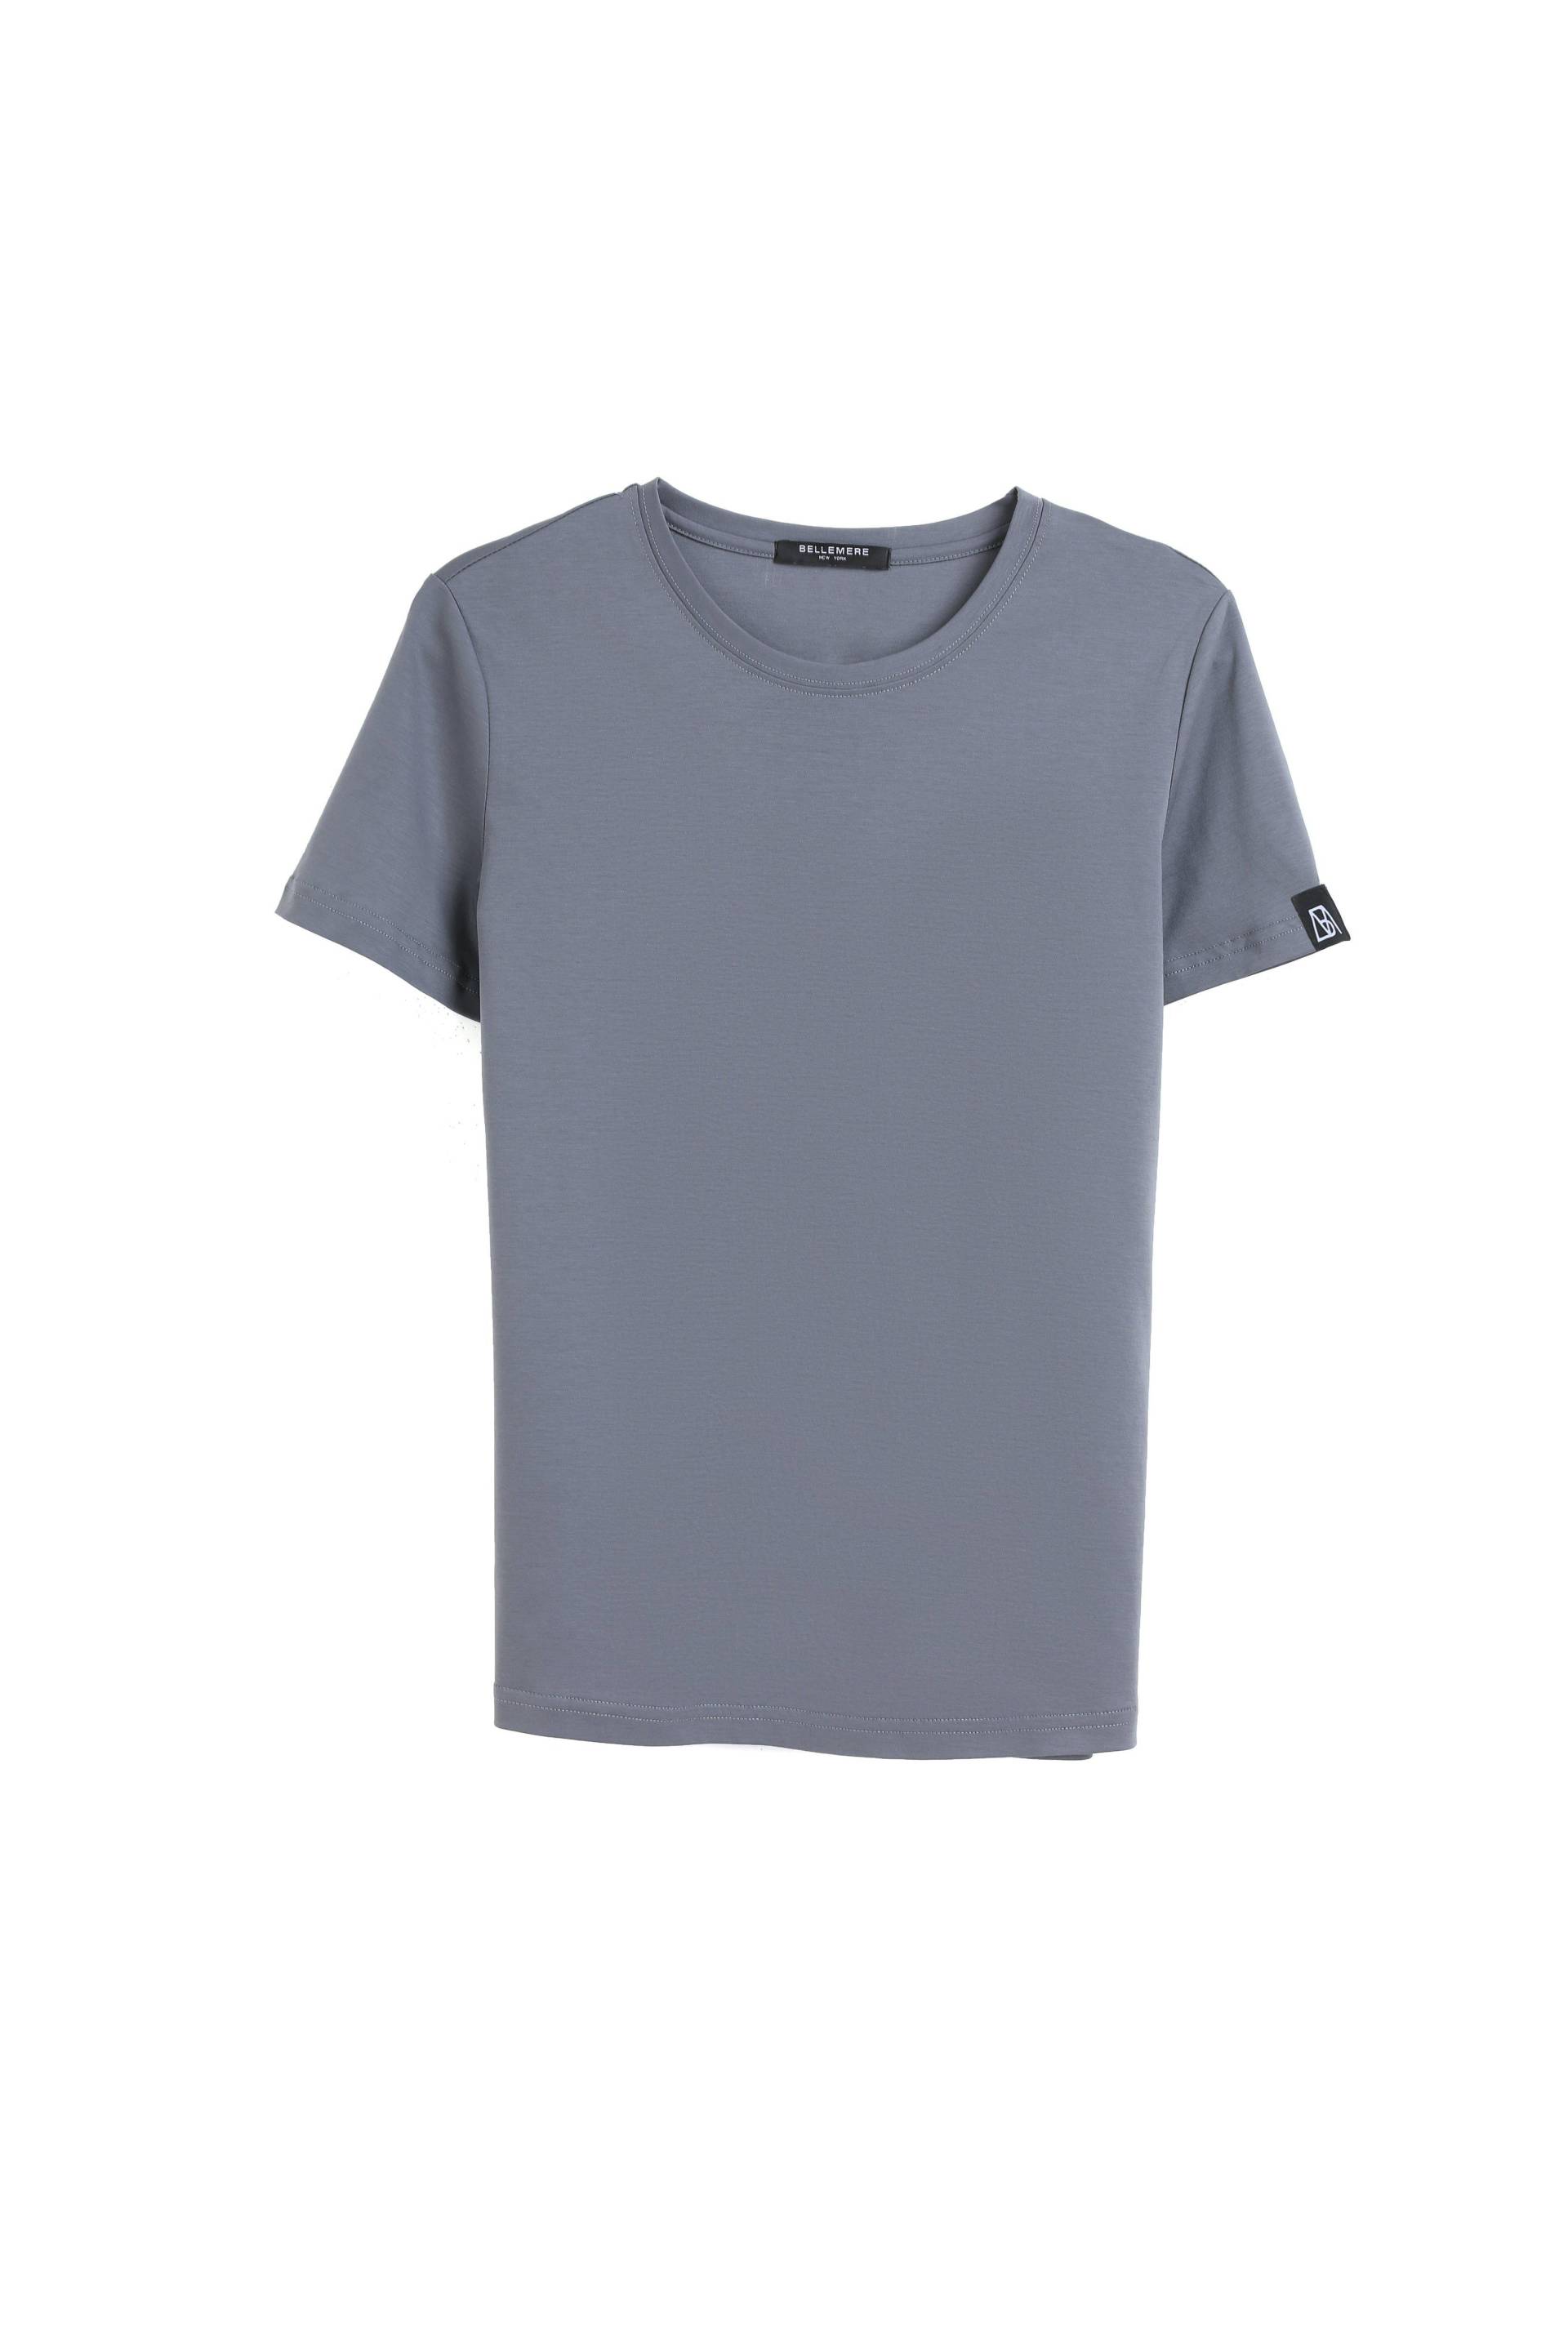 Grand T-shirt Aus Baumwolle Mit Rundhalsausschnitt, 160 G Damen Taubengrau S von Bellemere New York